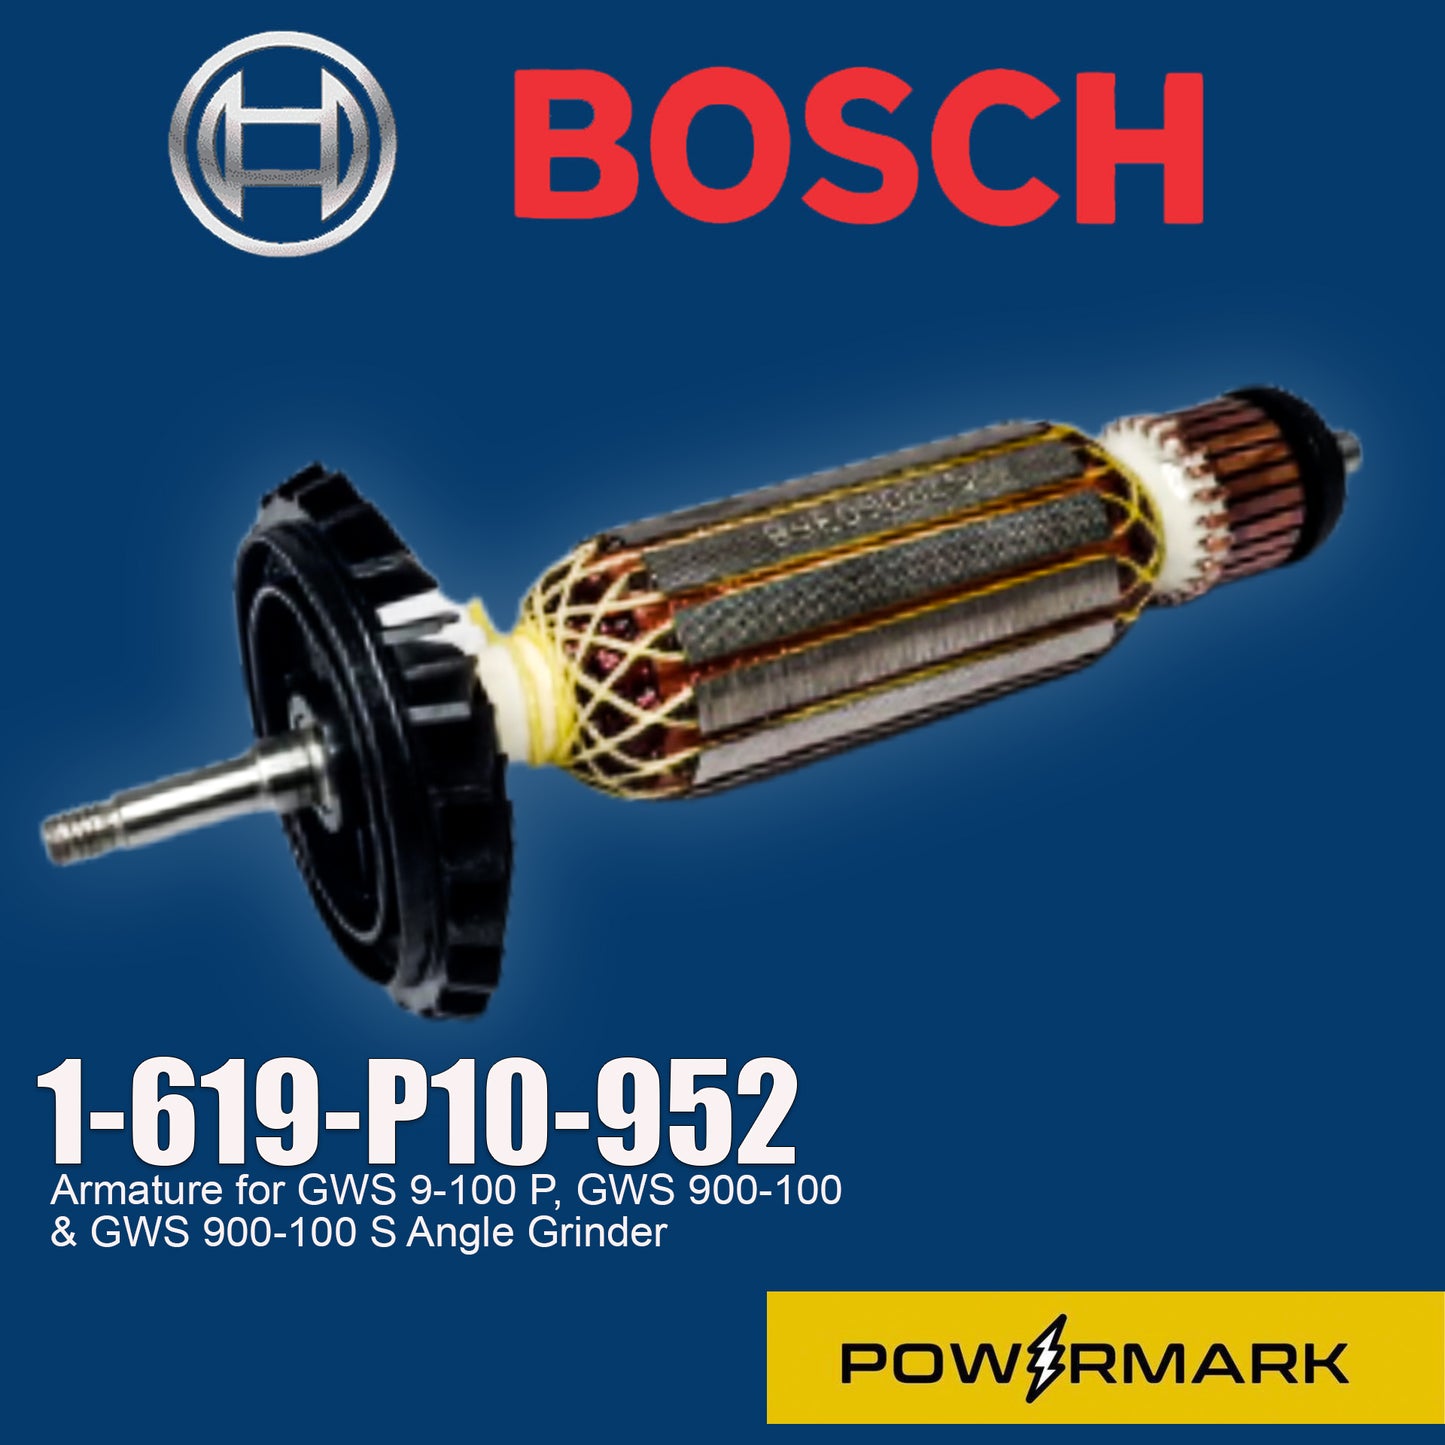 Bosch 1-619-P10-952 Armature for GWS 9-100 P, GWS 900-100, & GWS 900-100 S Angle Grinder